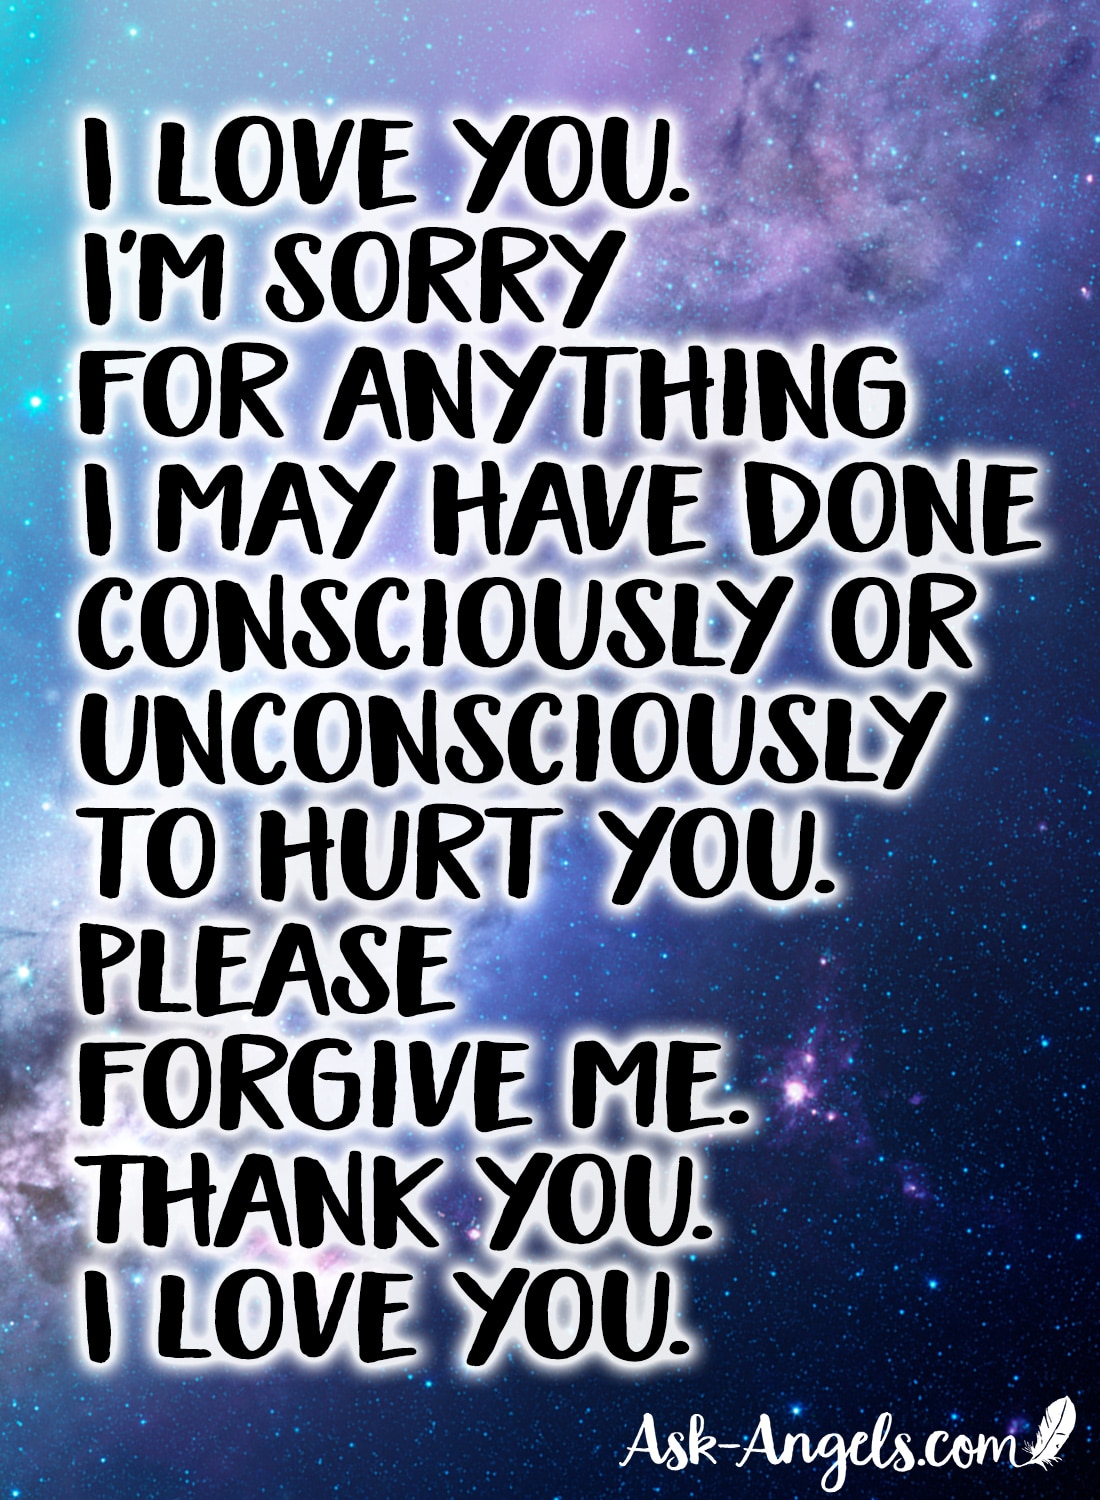 I love you. I'm sorry. Please forgive me.